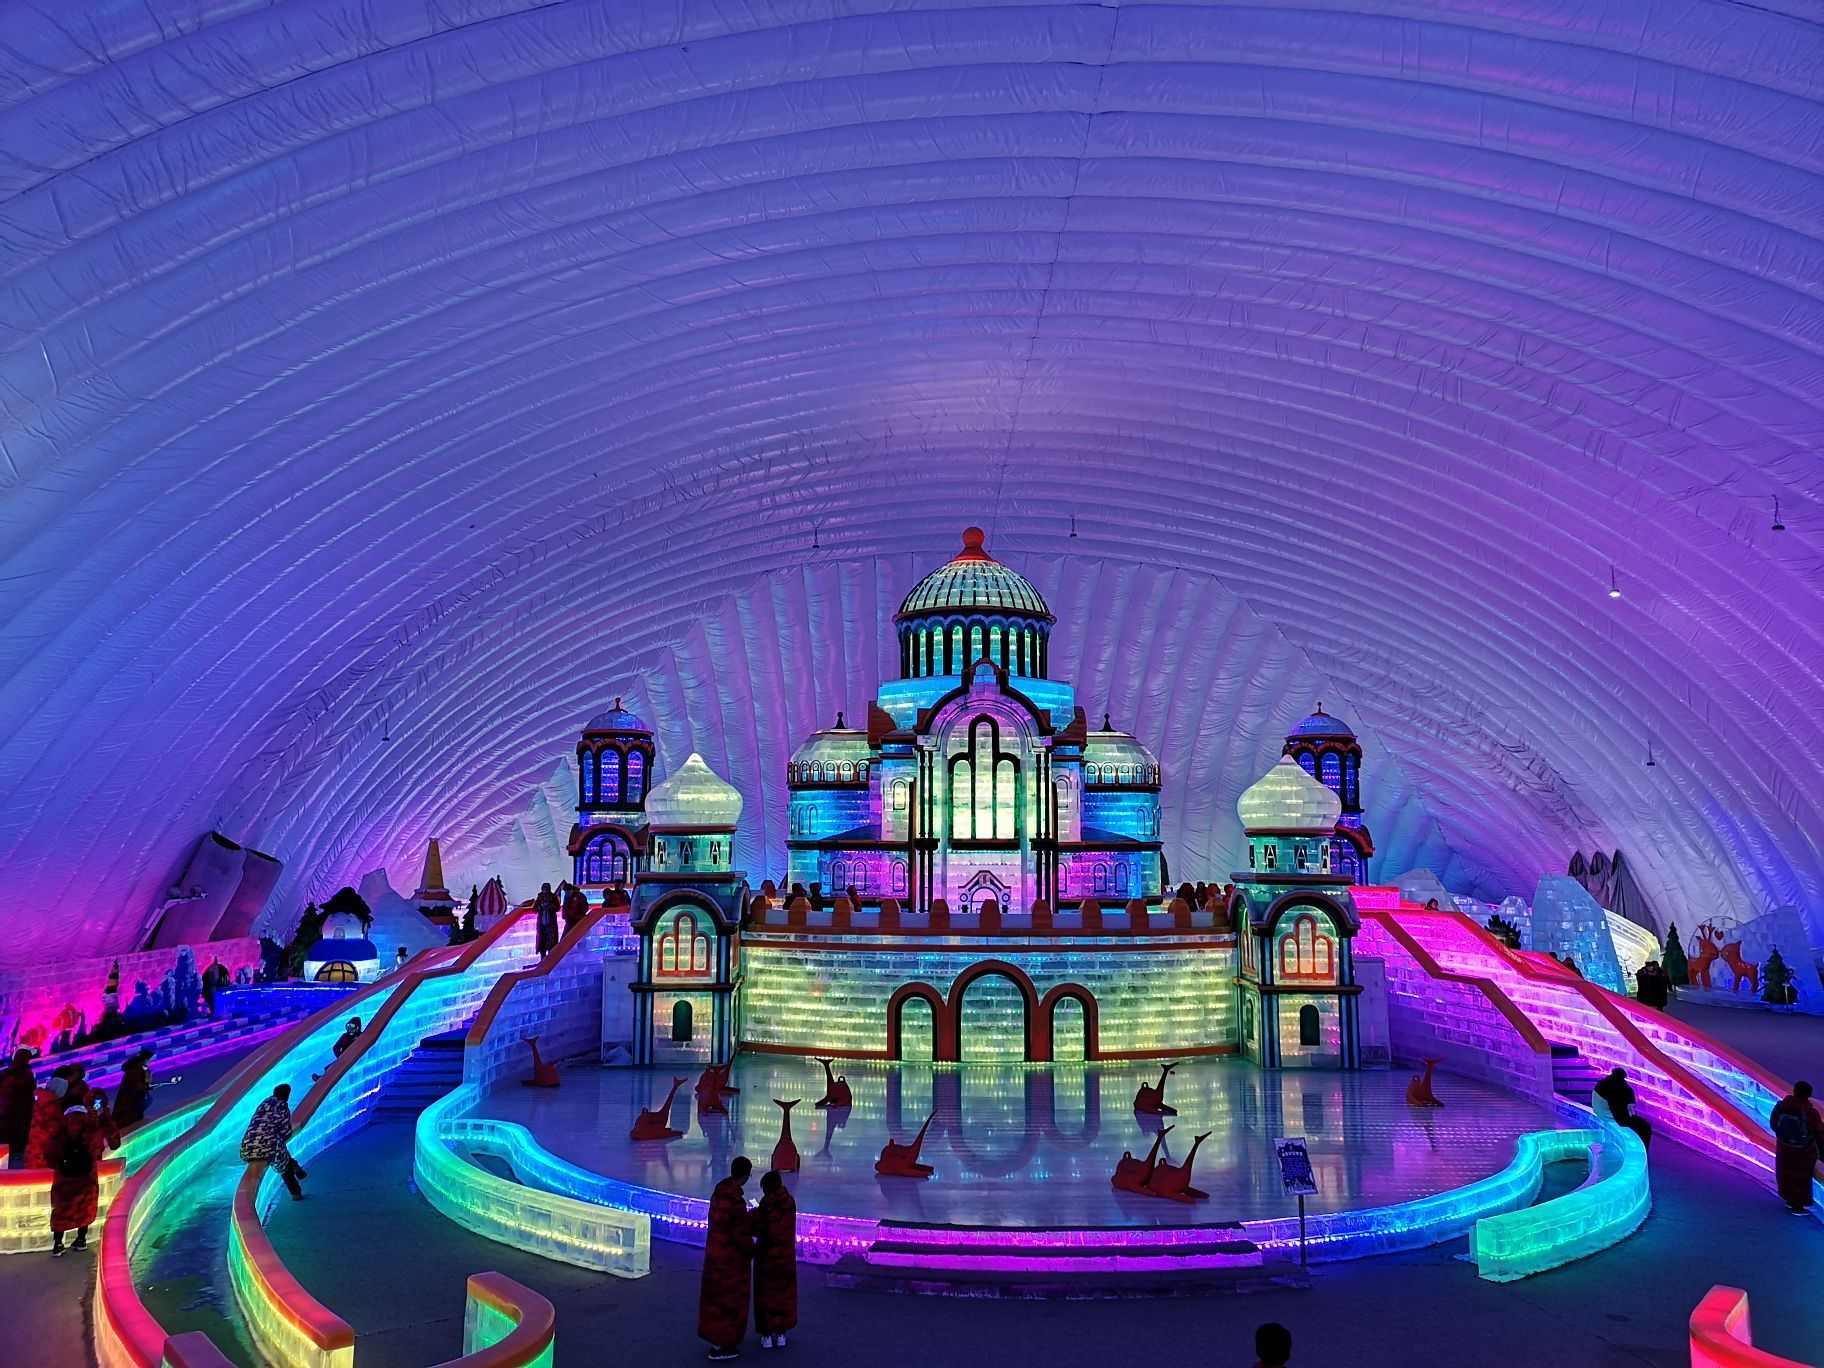 哈尔滨冰雪大世界室内冰雪主题乐园是哈尔滨的热门景点,里面的冰雕